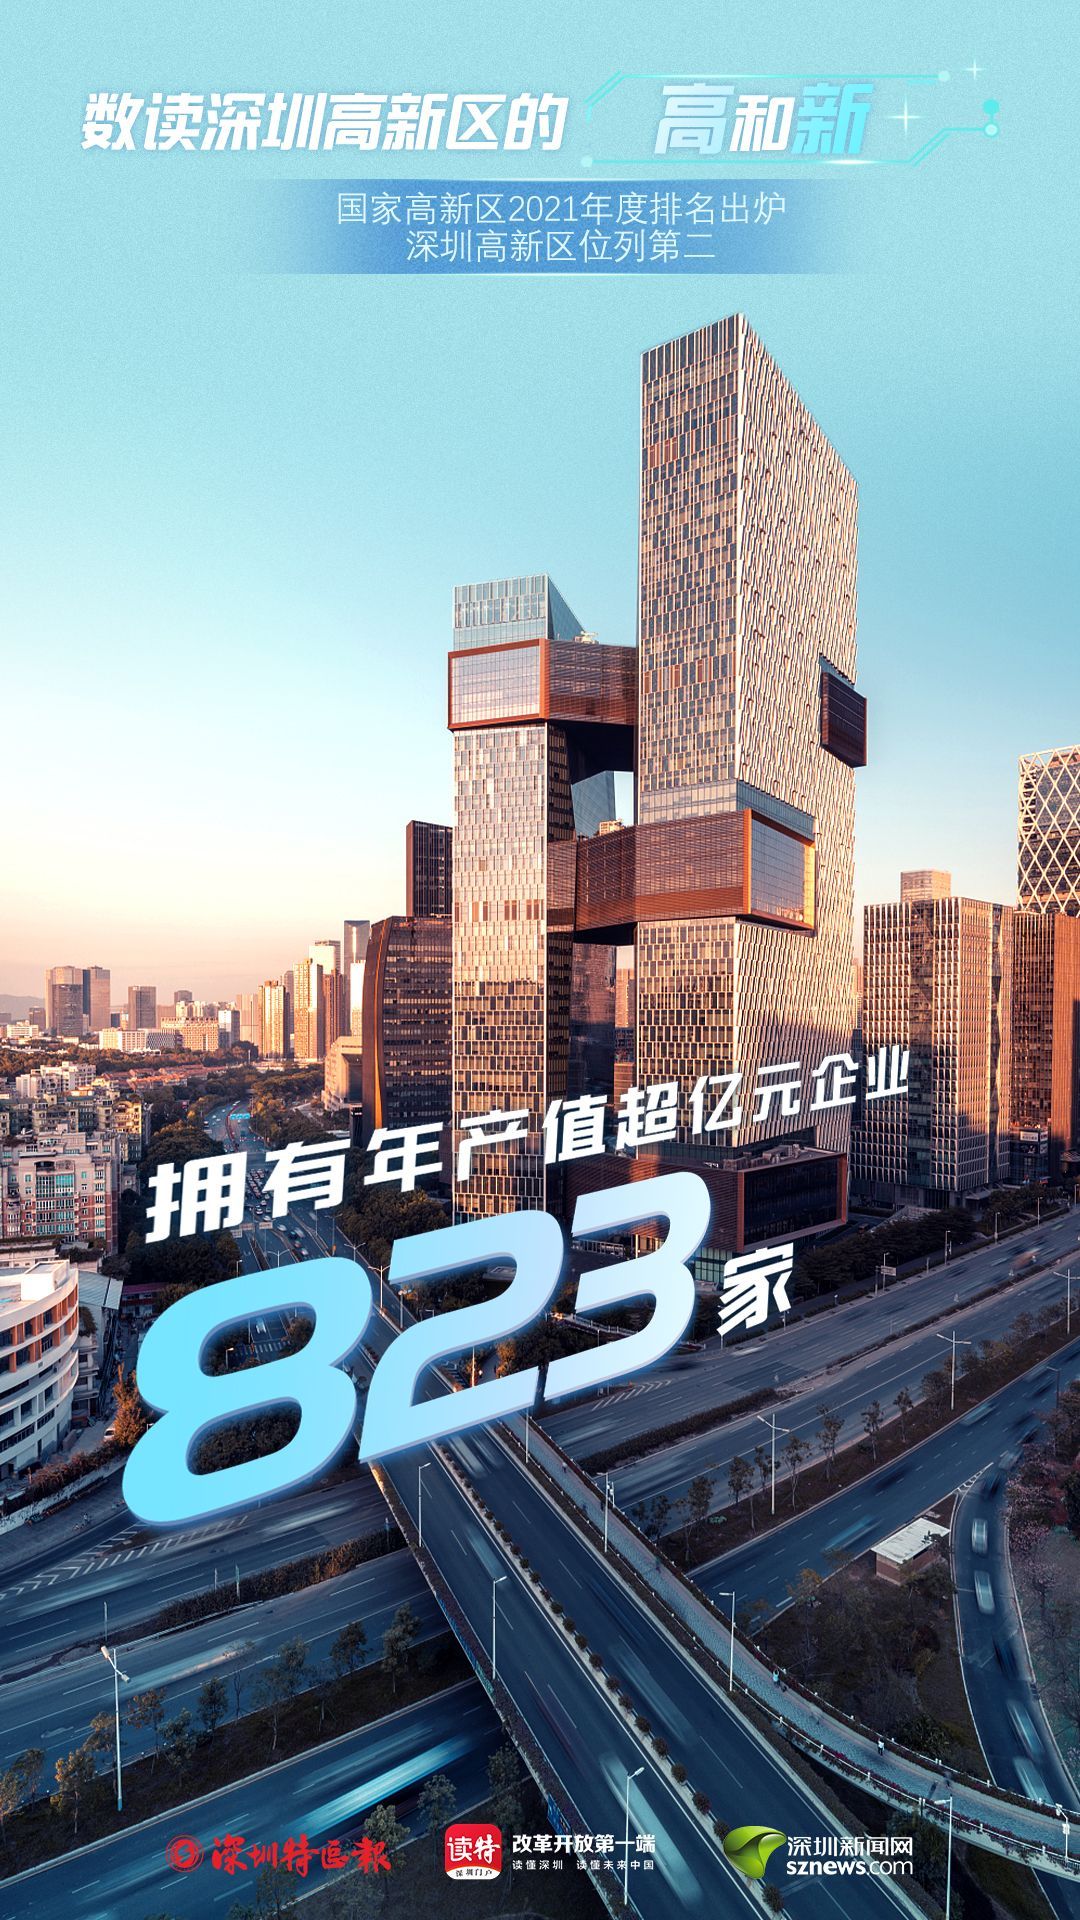 除特别说明外，以上数据为2020年统计数据，来源于深圳市科创委。